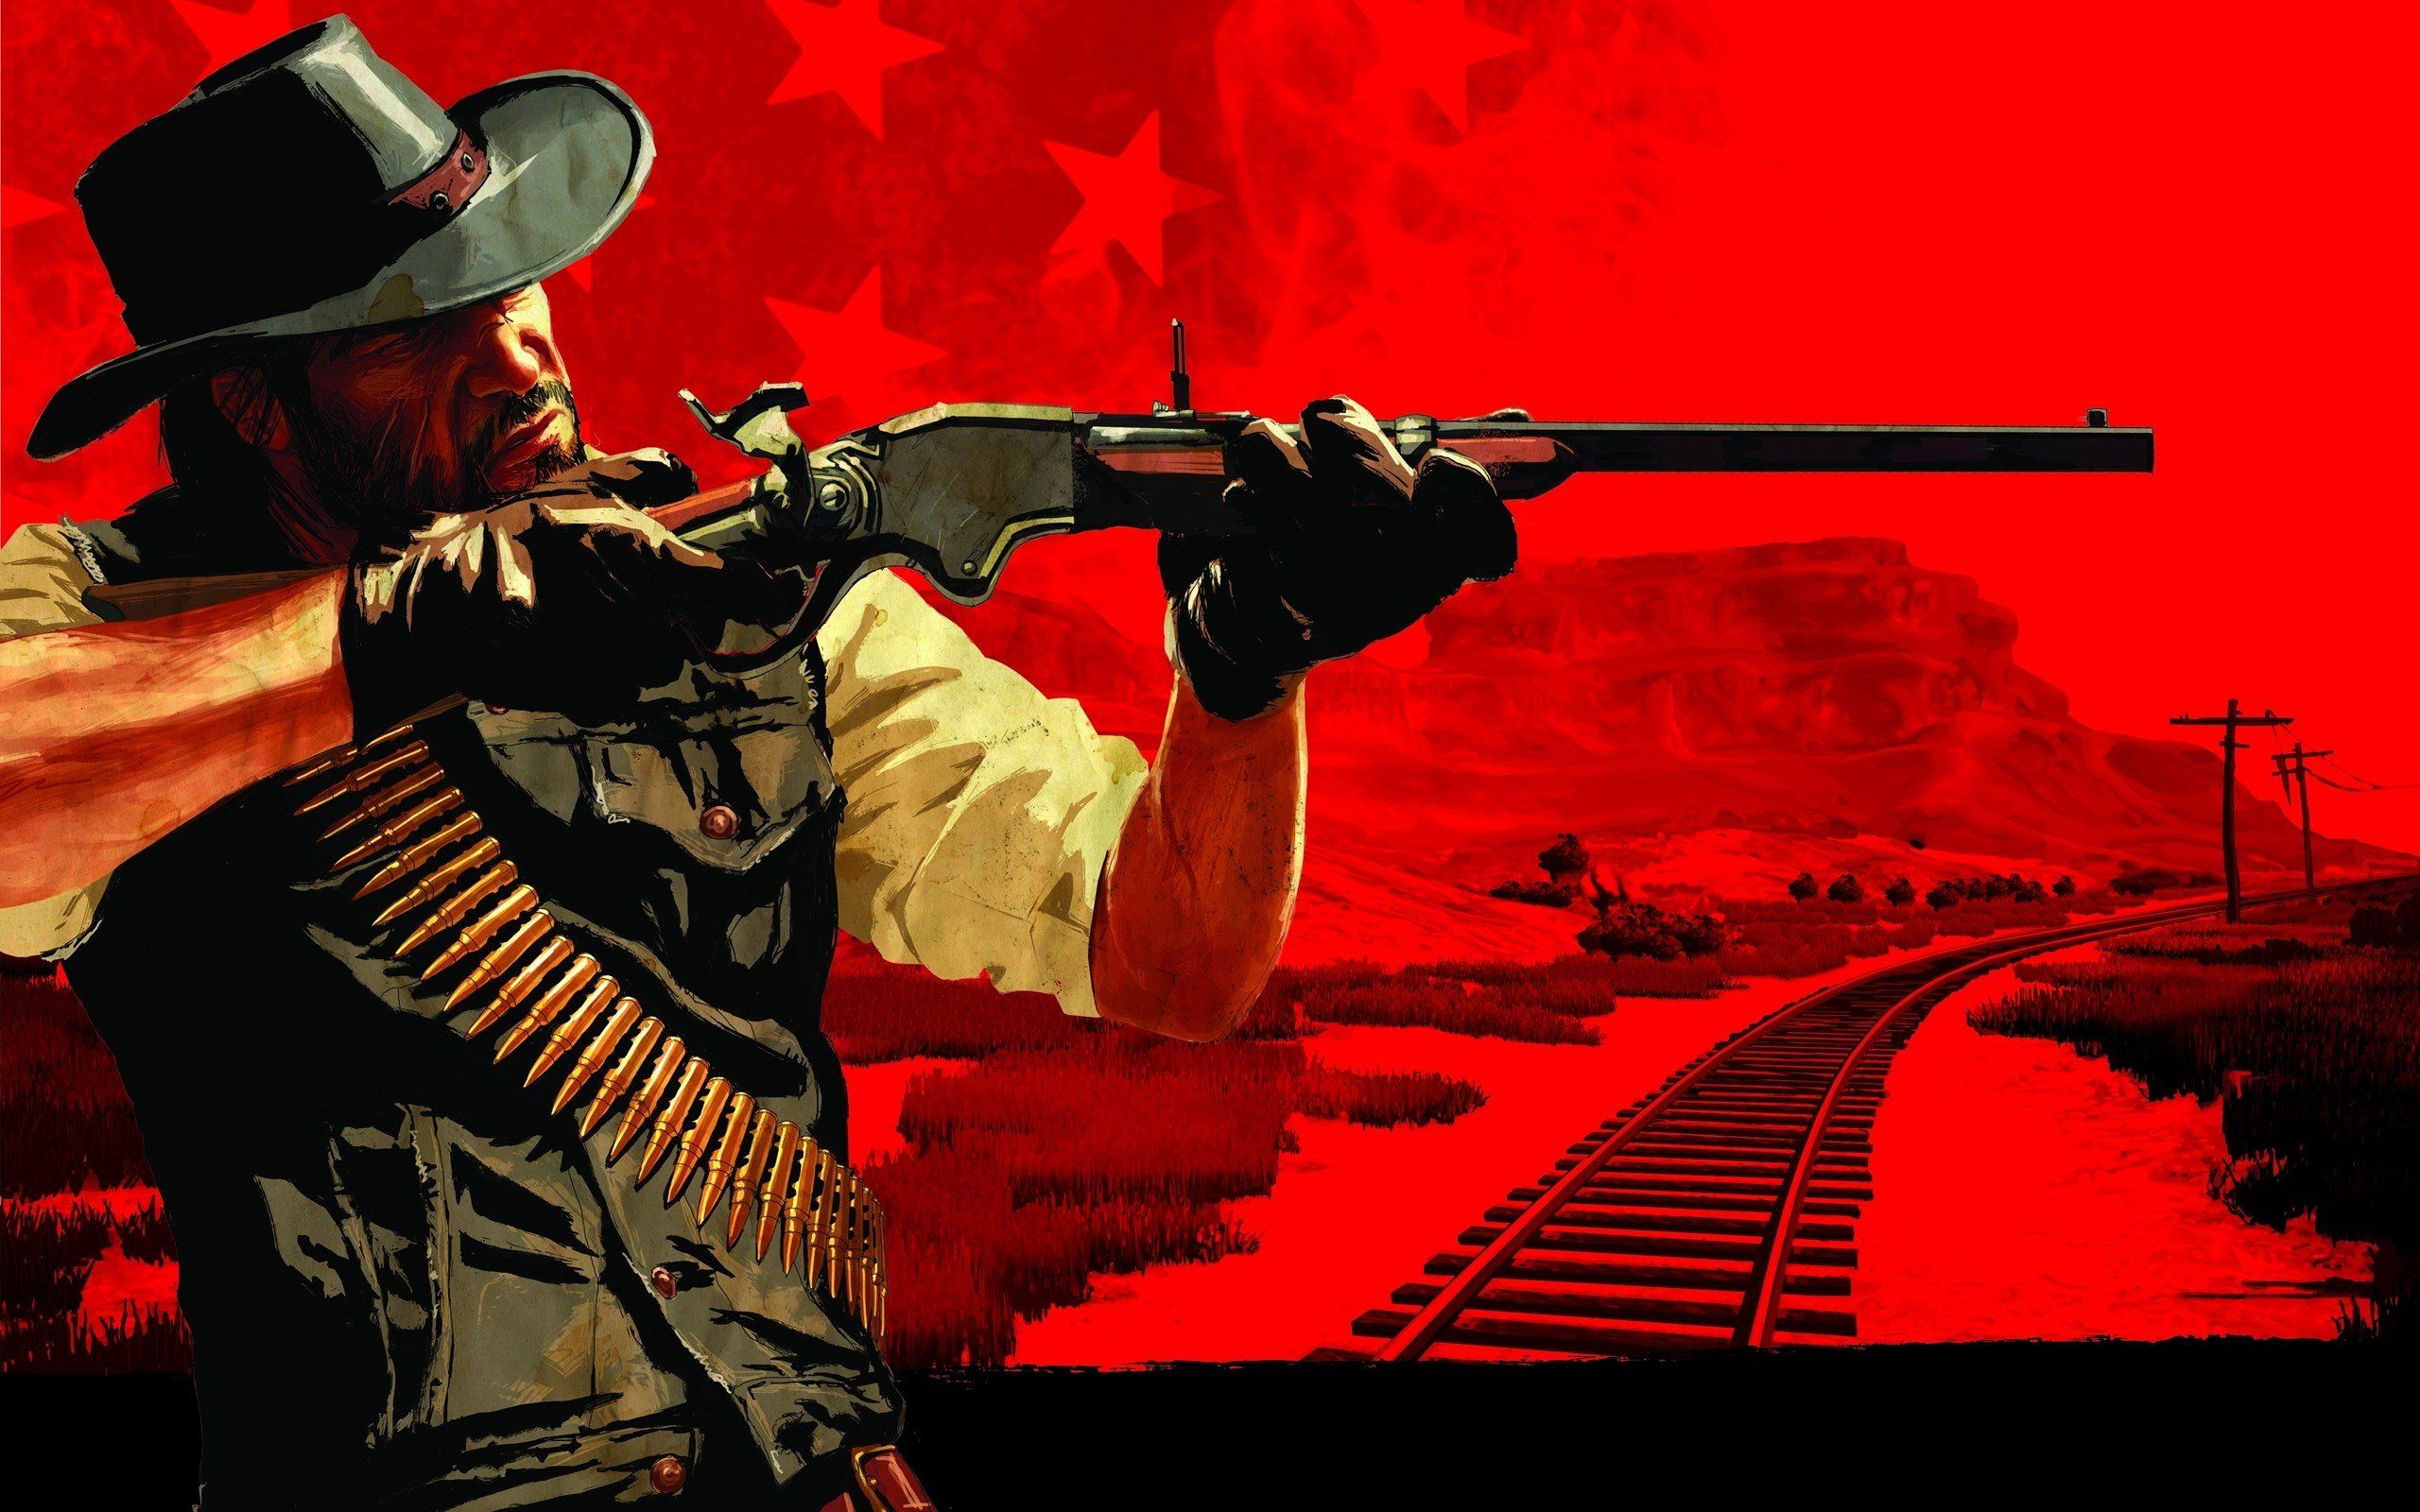 Video games western Red Dead Redemption artwork wild west